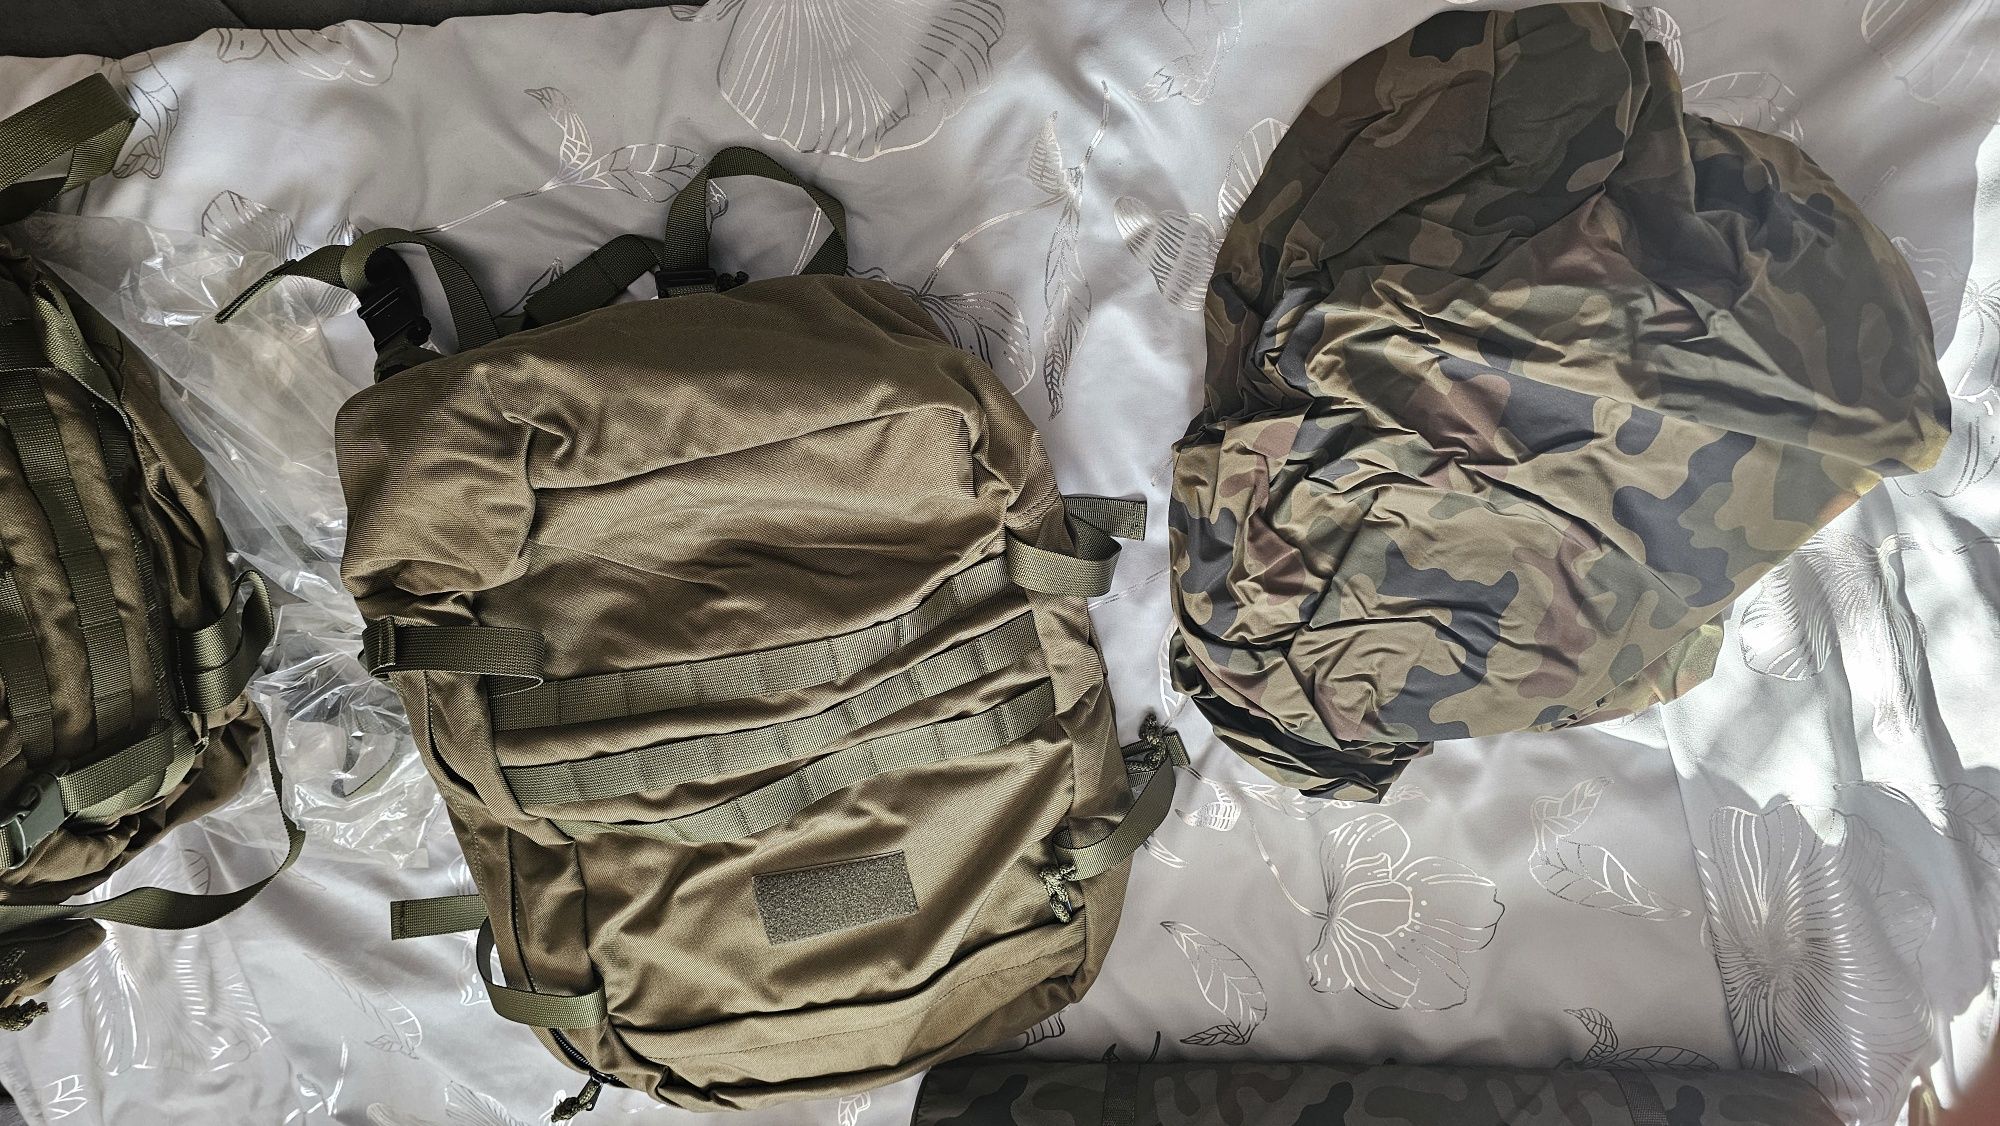 Plecak zasobnik piechoty górskiej komplet